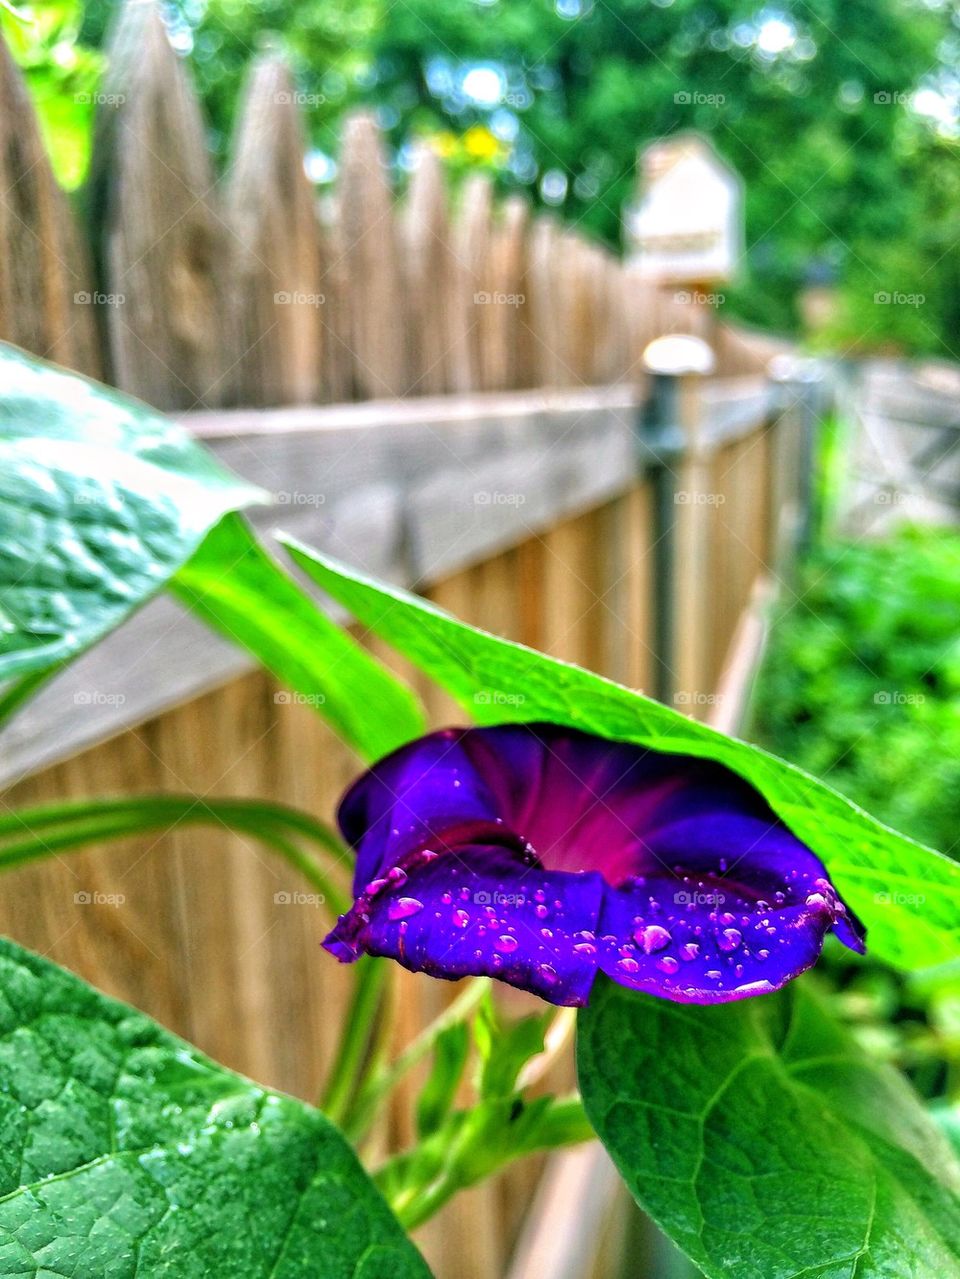 Wet flower